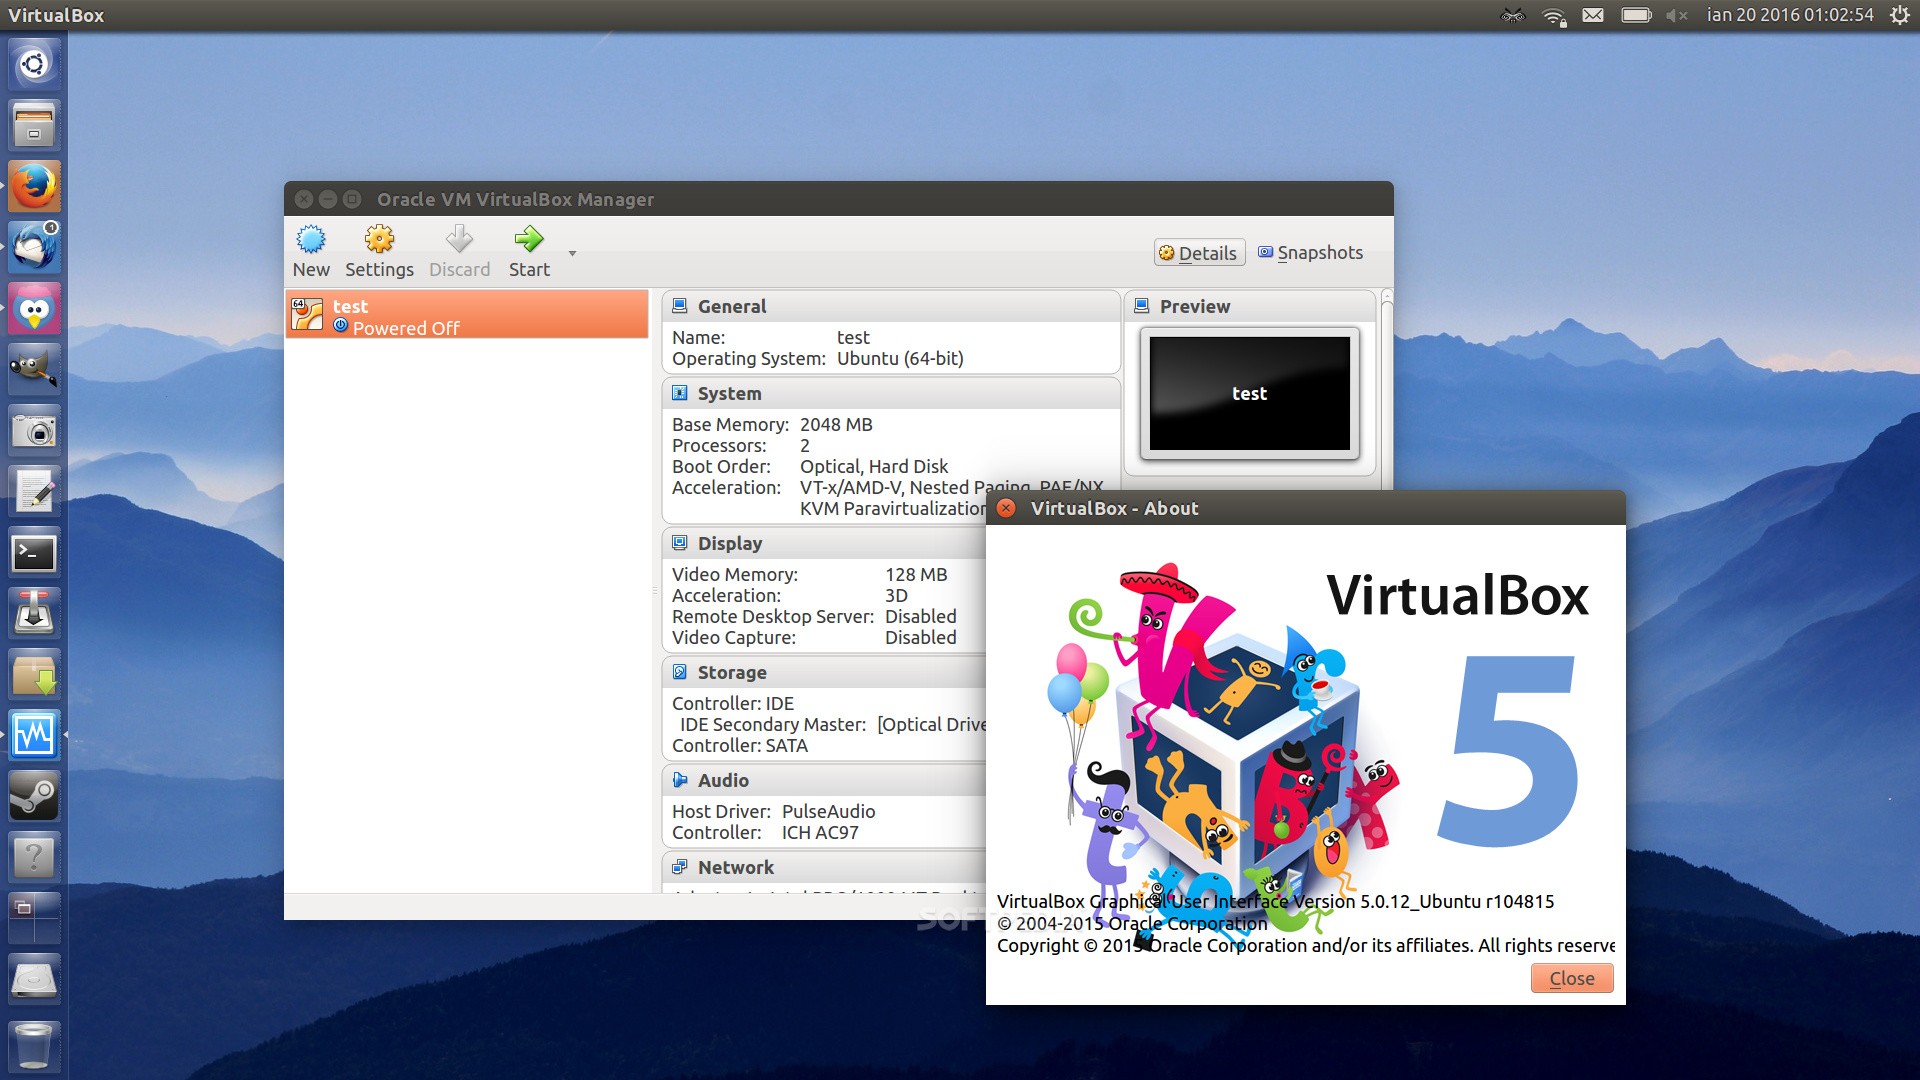 mac os virtualbox image download